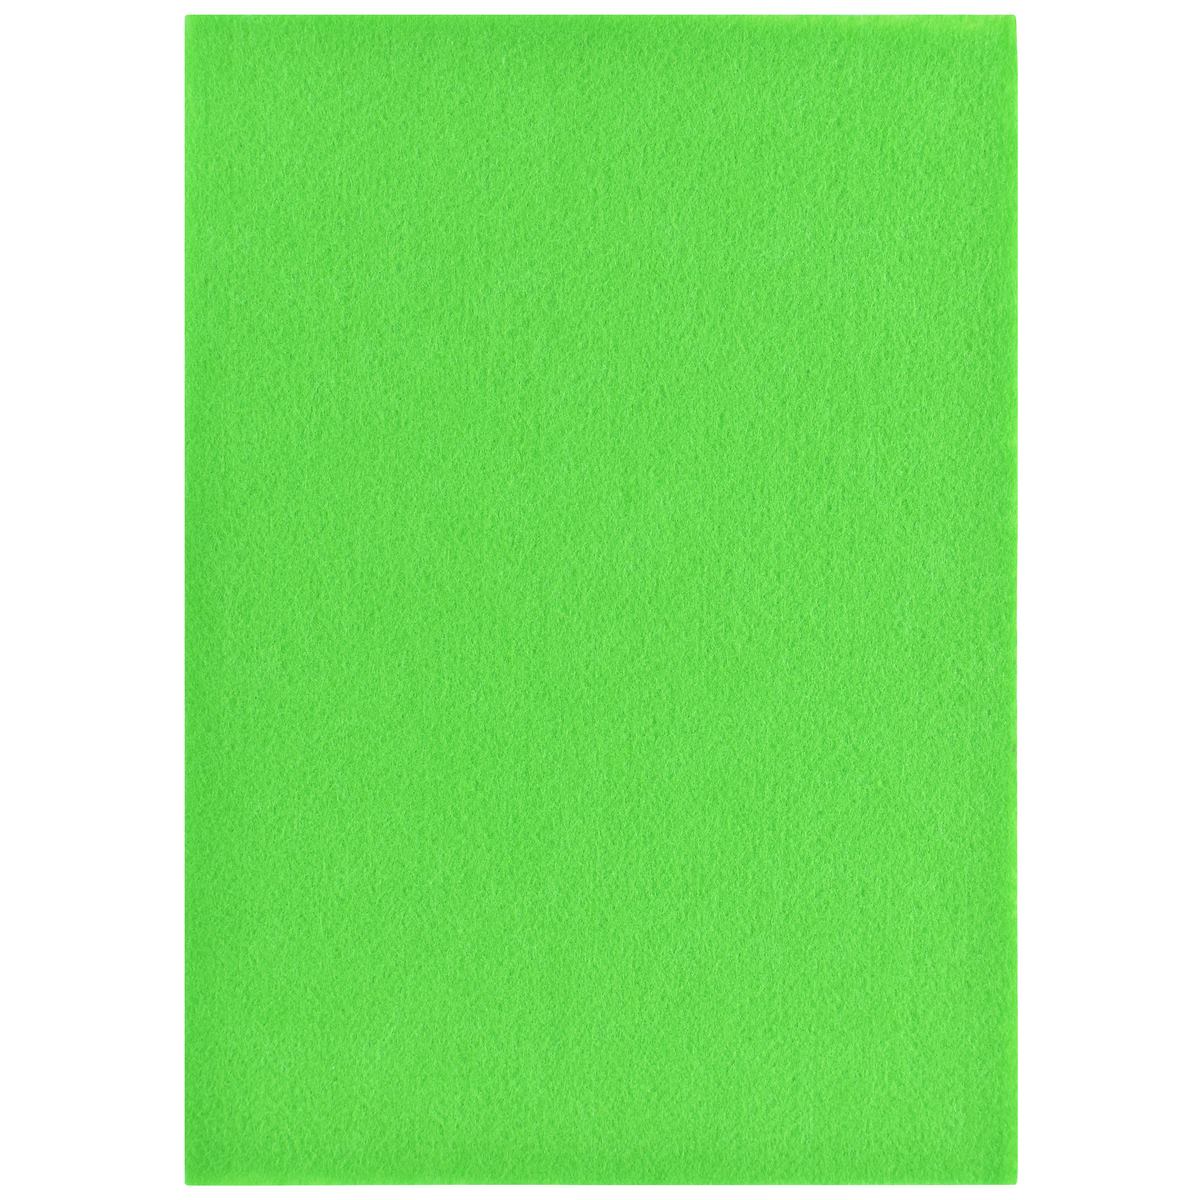 jags-mumbai 1 Felt Paper A4 Nonwoven Felt Sheet Light Green A4LGN102